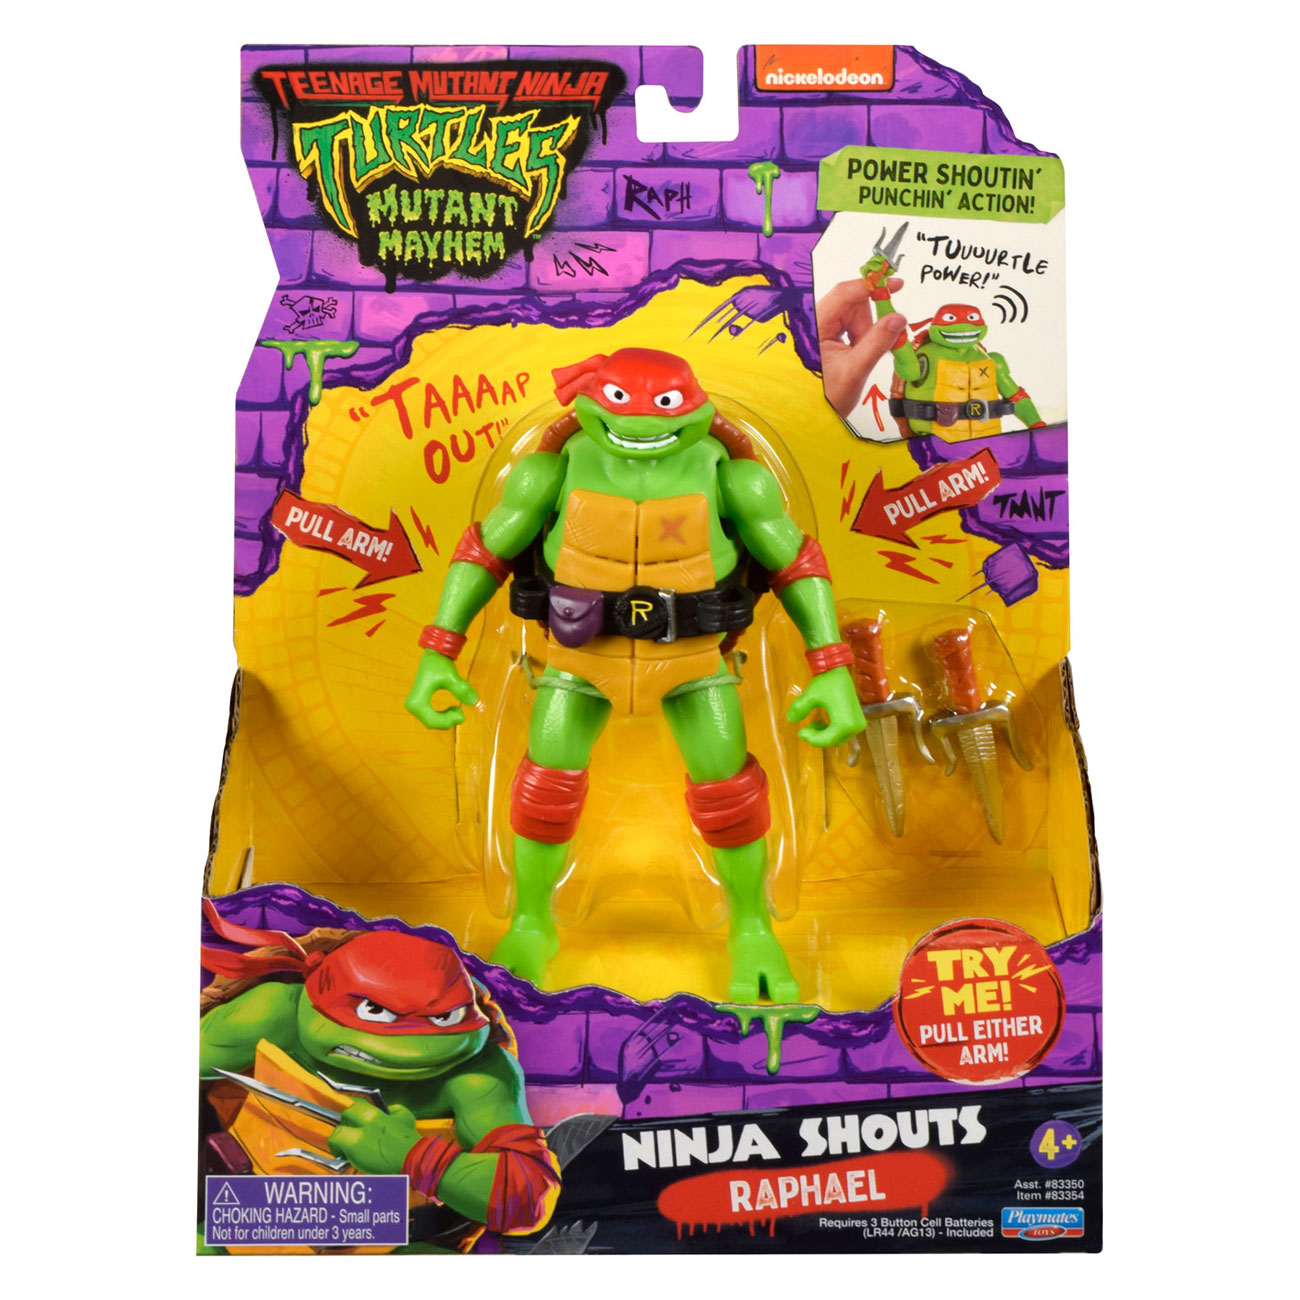 Teenage Mutant Ninja Turtles Ninja Shouts Speelfiguur - Raphael